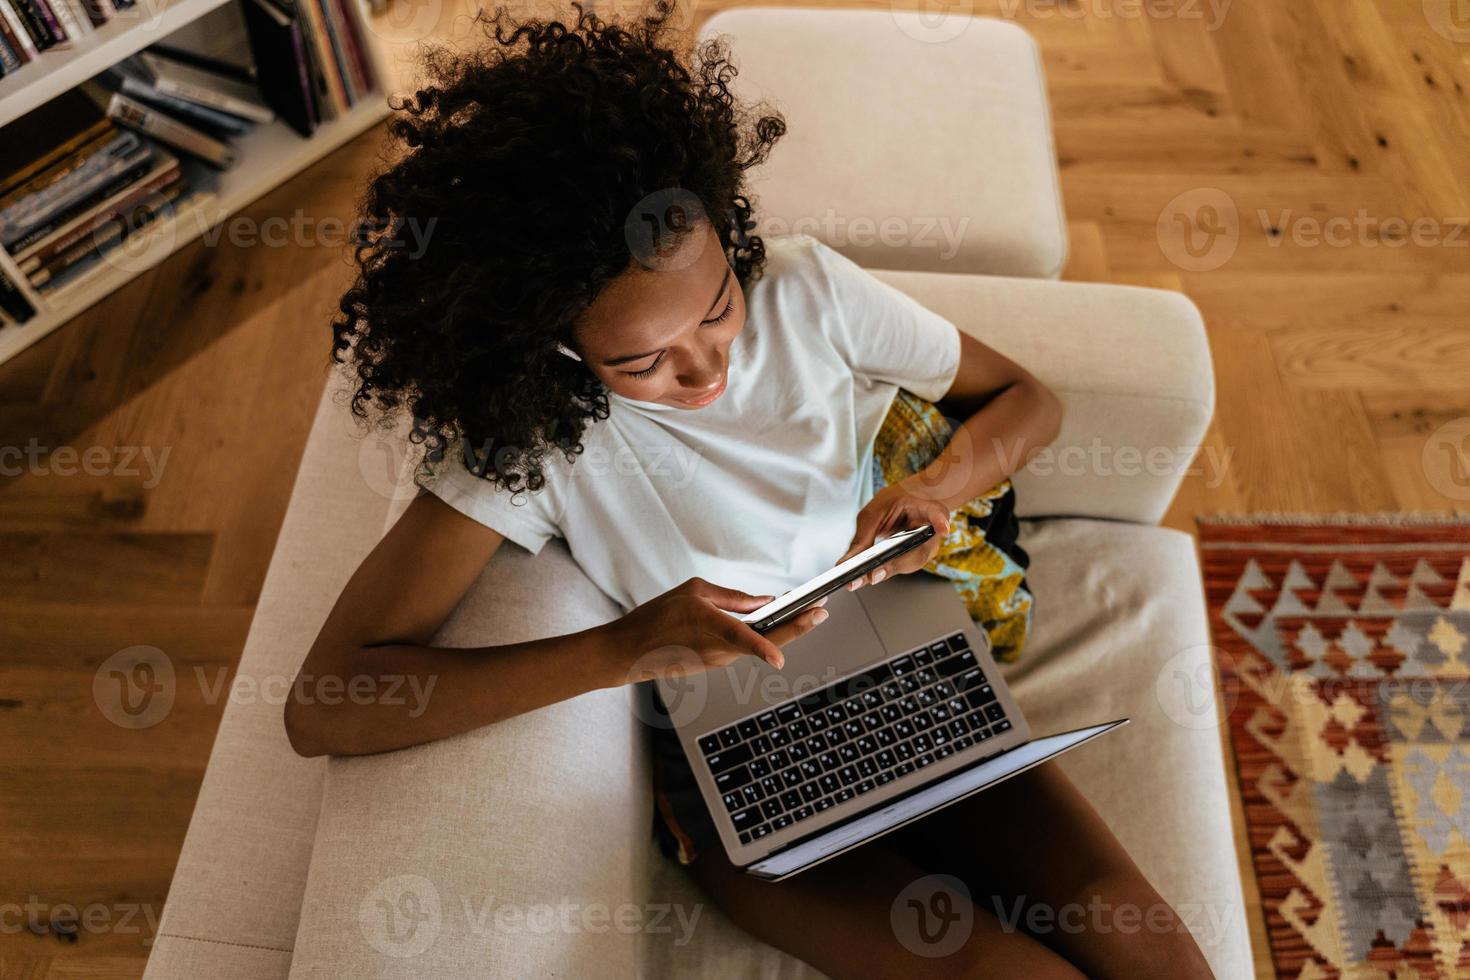 jeune femme noire utilisant un téléphone portable et un ordinateur portable tout en se reposant sur un canapé photo